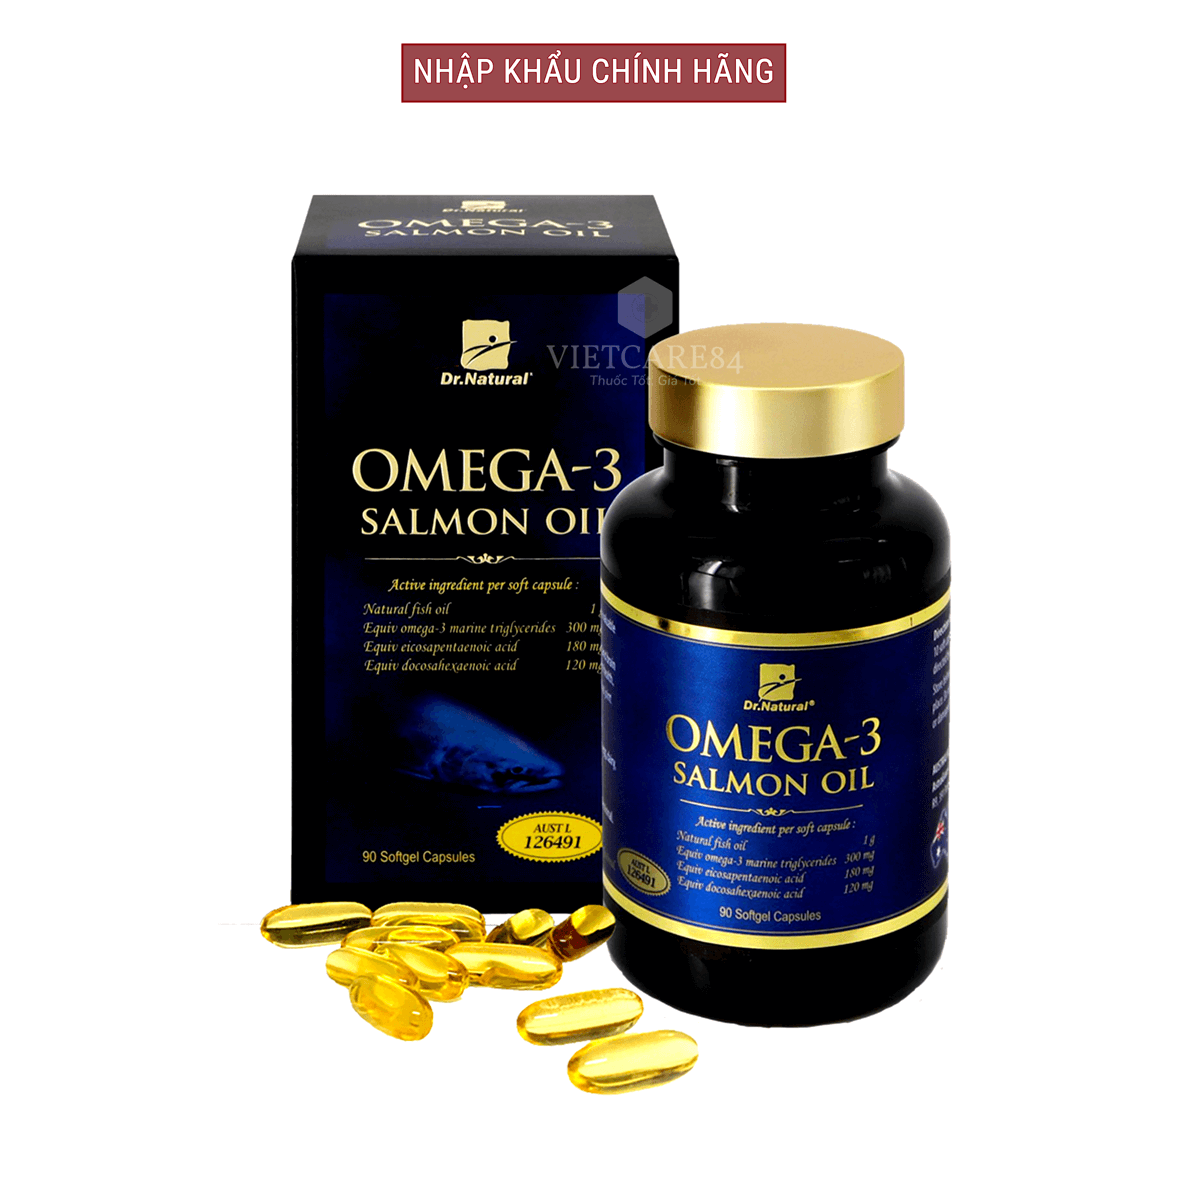 Bộ sản phẩm nhập khẩu chính hãng giúp bổ sung cân bằng nội tiết tố nữ gồm: viên uống bổ sung nội tiết tố nữ HYPER EVENING PRIMROSE OIL (90 viên) và viên omega 3 dầu cá hồi OMEGA 3 SALMON OIL (90 viên)